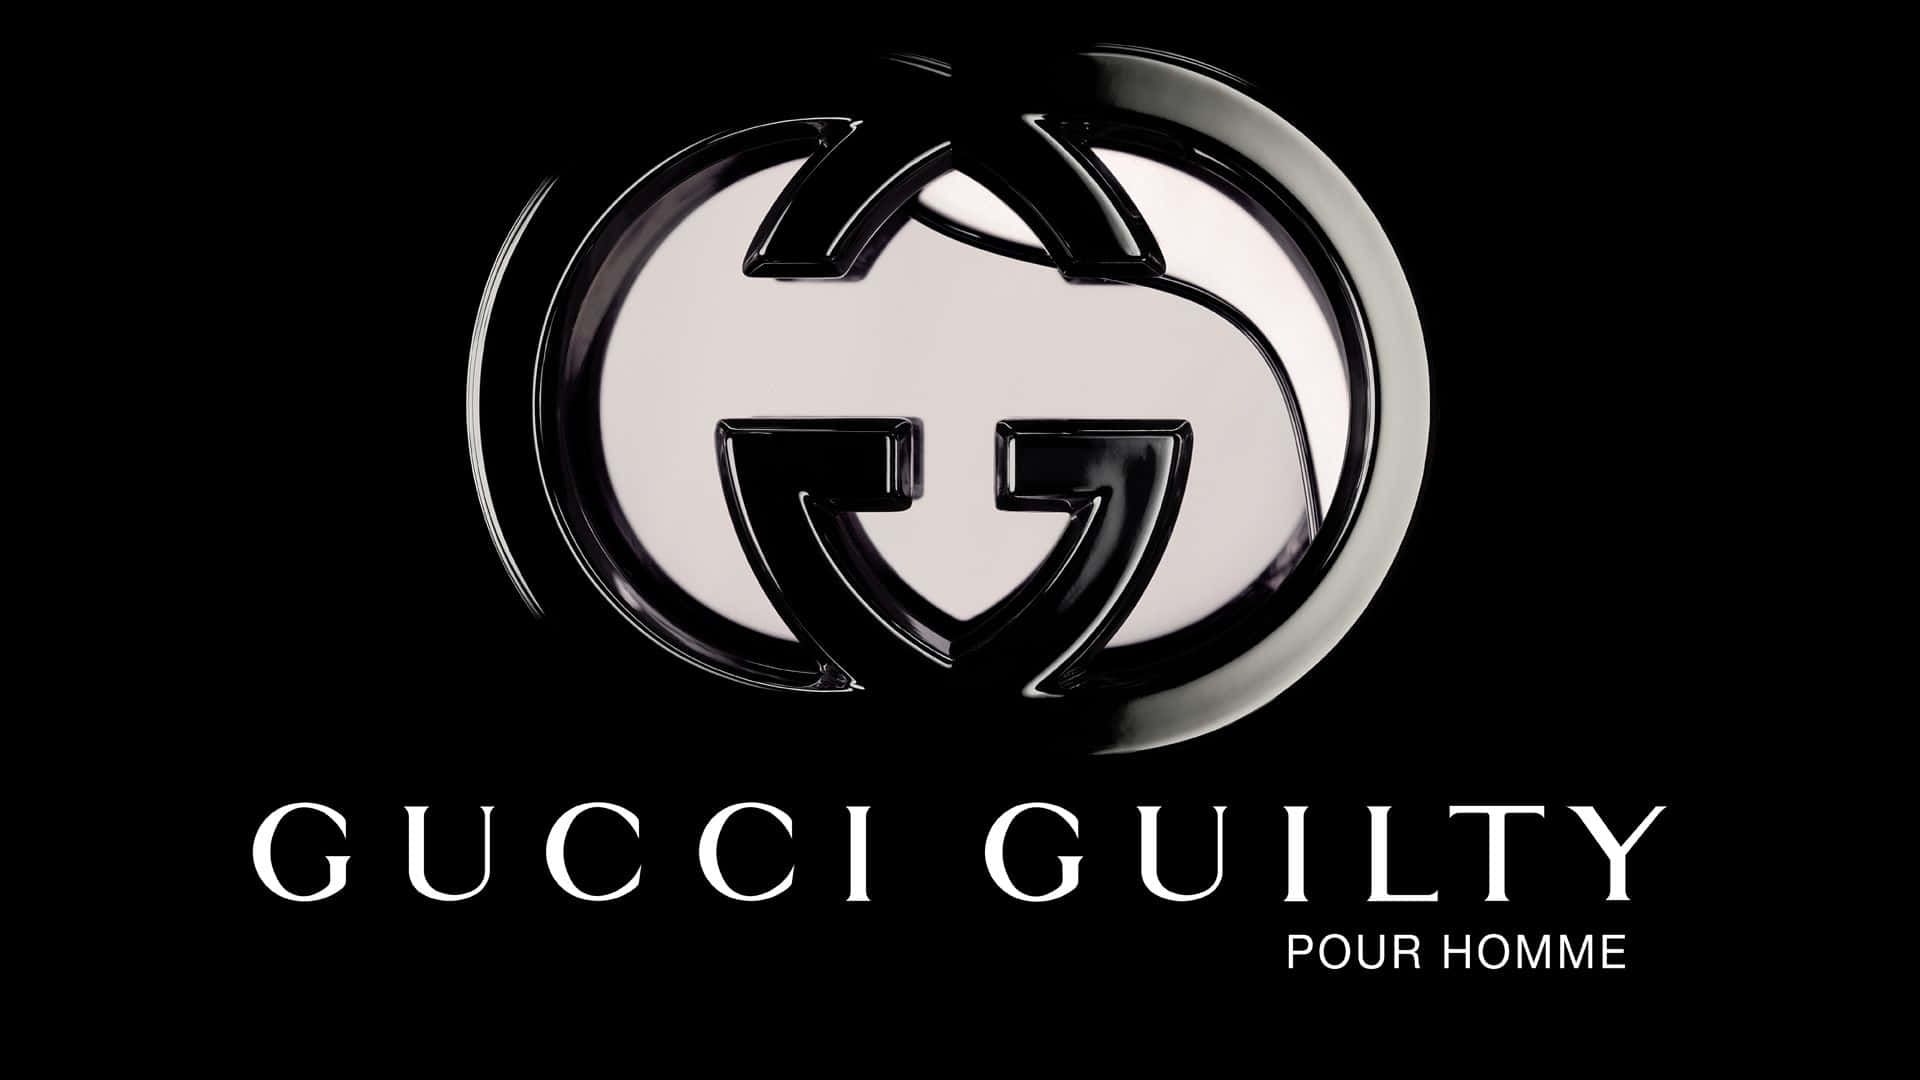 Sfondoartistico Con Logo Gucci Guilty Argentato E Lucente.